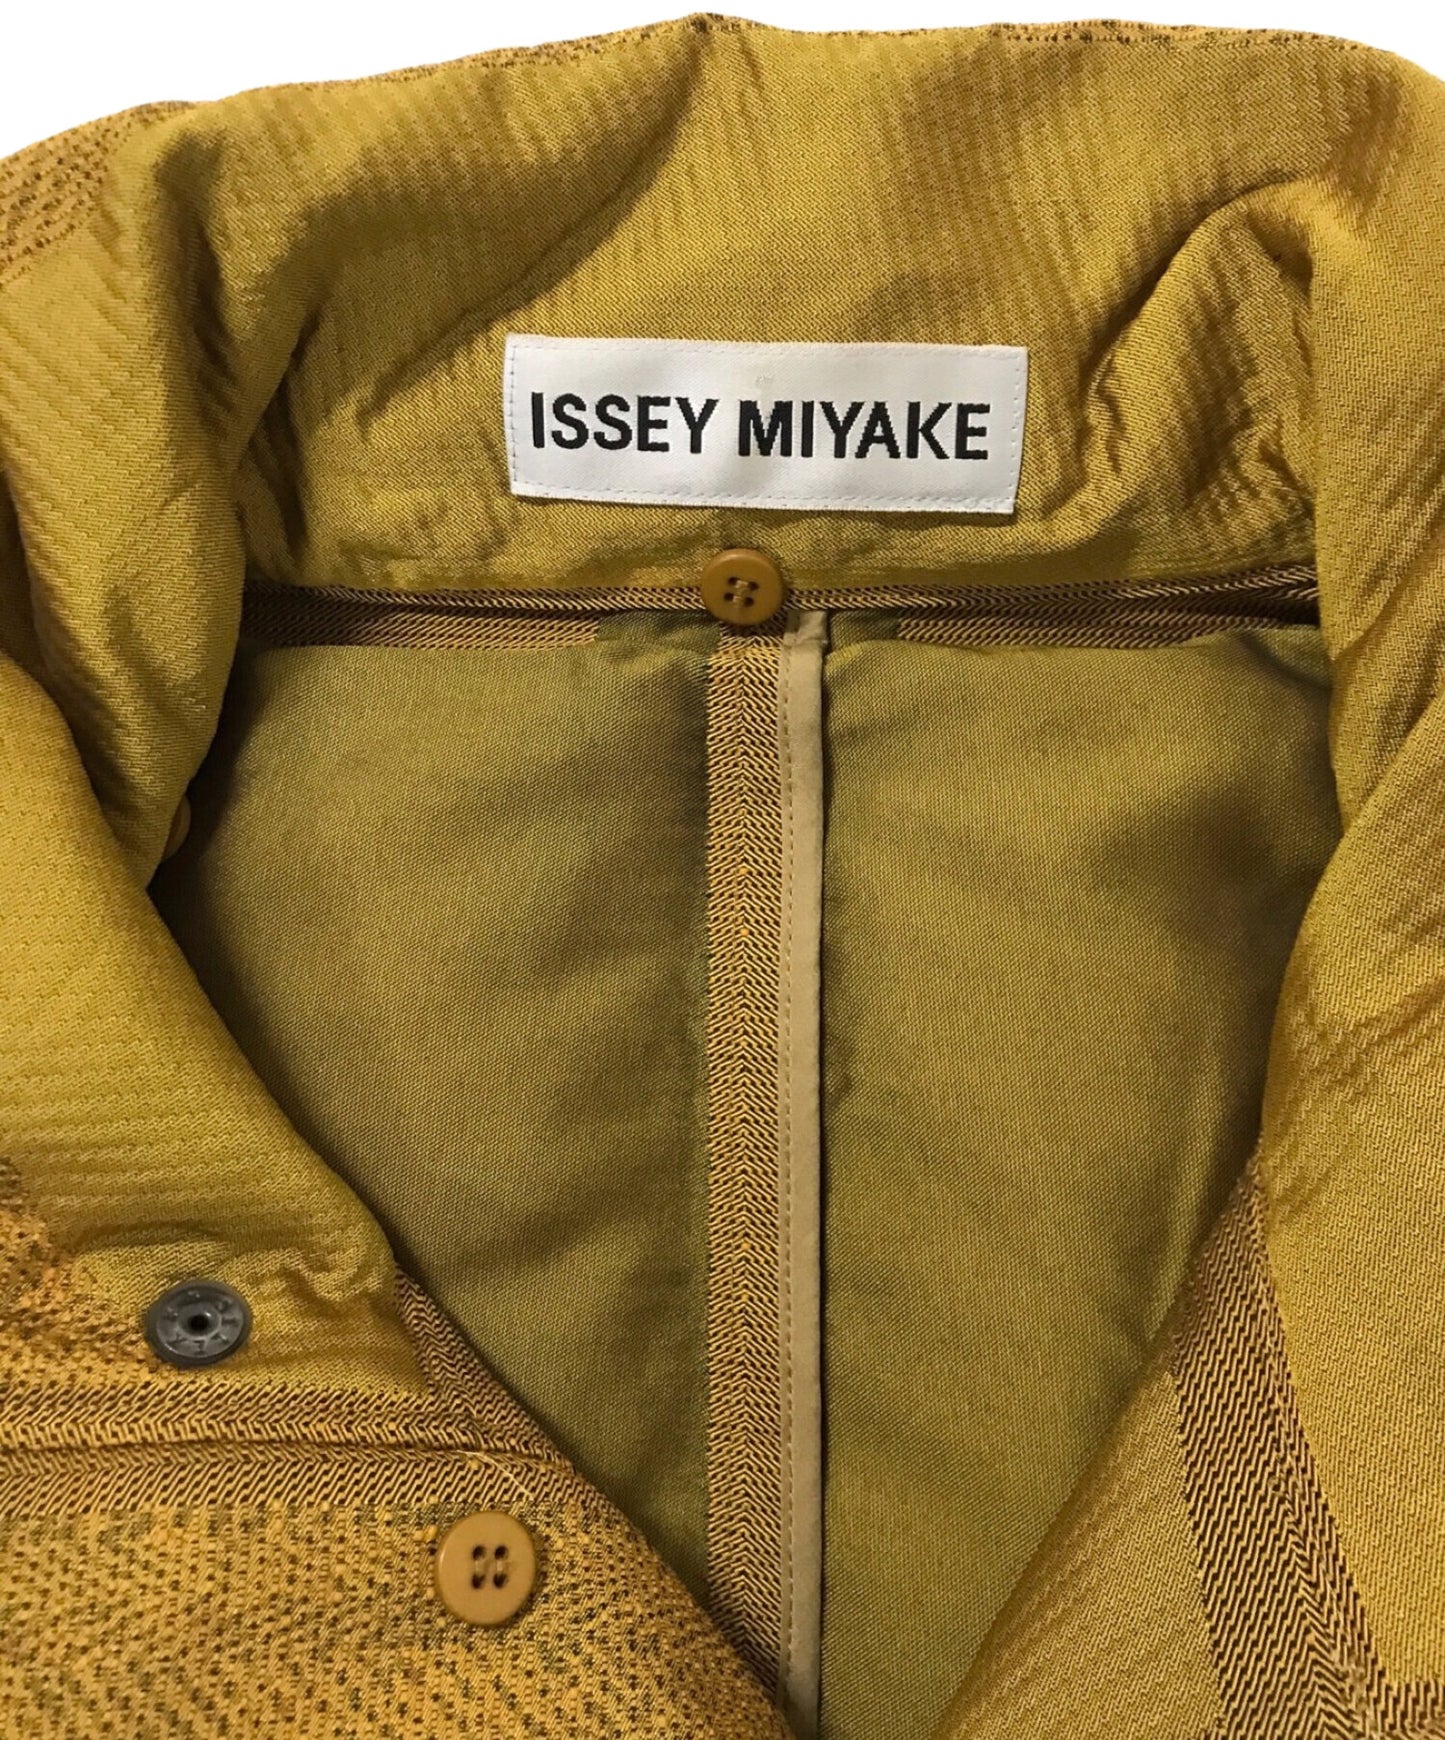 Issey Miyake Interwoven Design down jacket